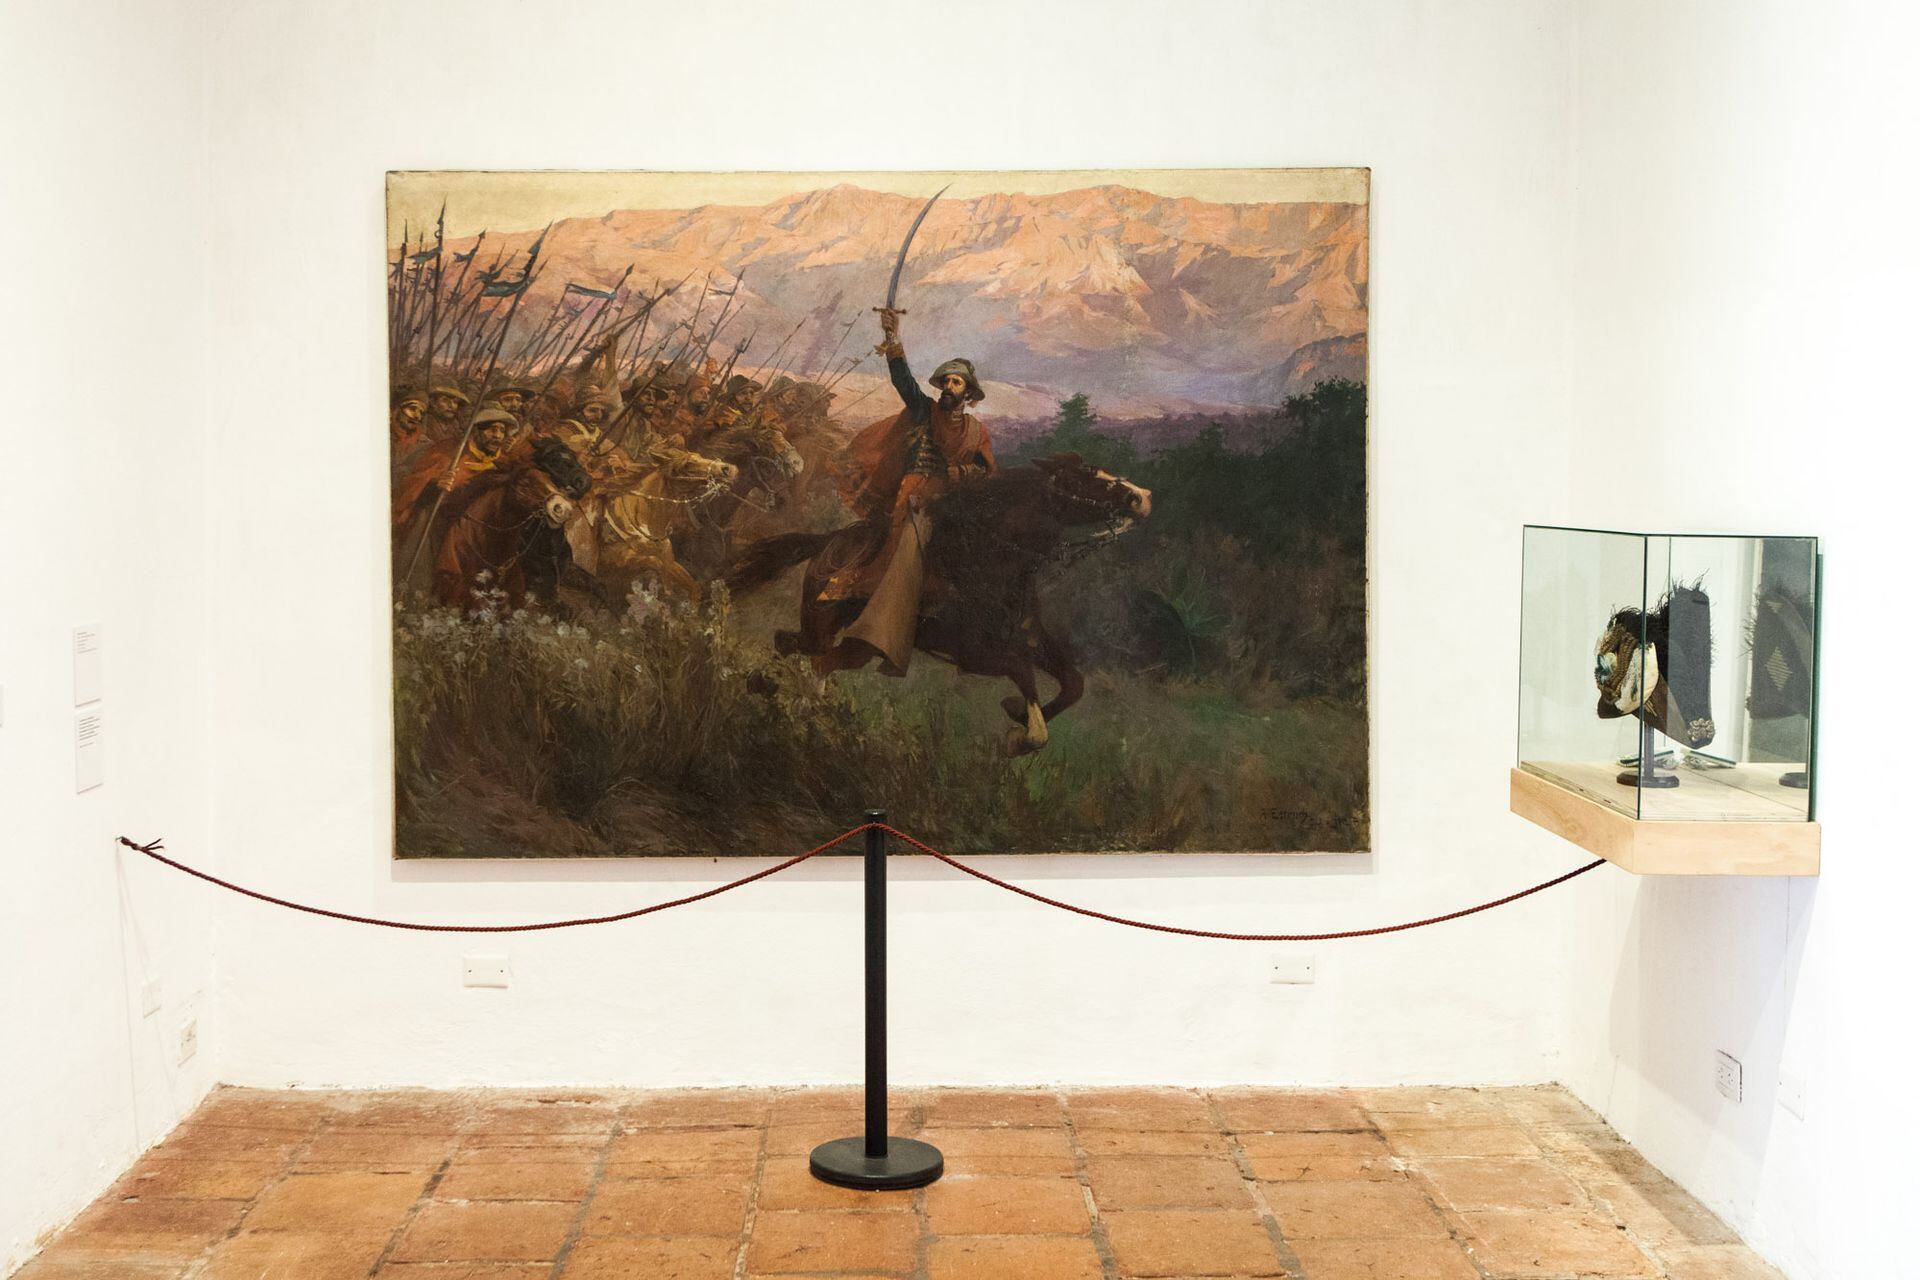 Junto al bicornio, "El Gral. Martín Miguel de Güemes y sus gauchos" es un óleo sobre tela de Antonio Estruch que data de 1912.